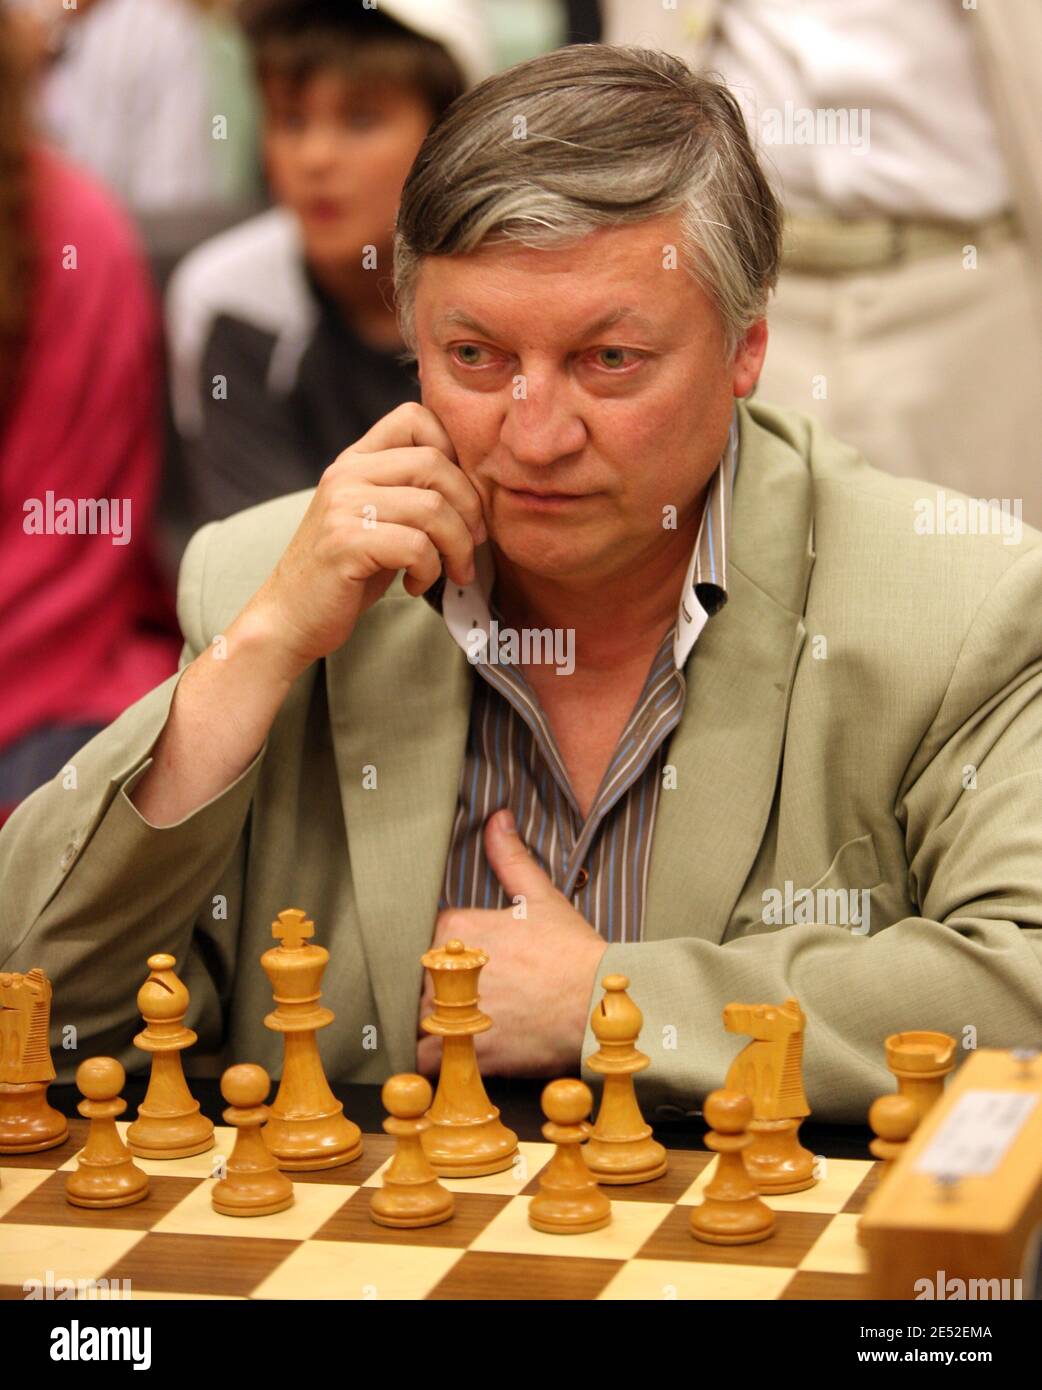 International Chess Federation on X: Today, Anatoly Karpov